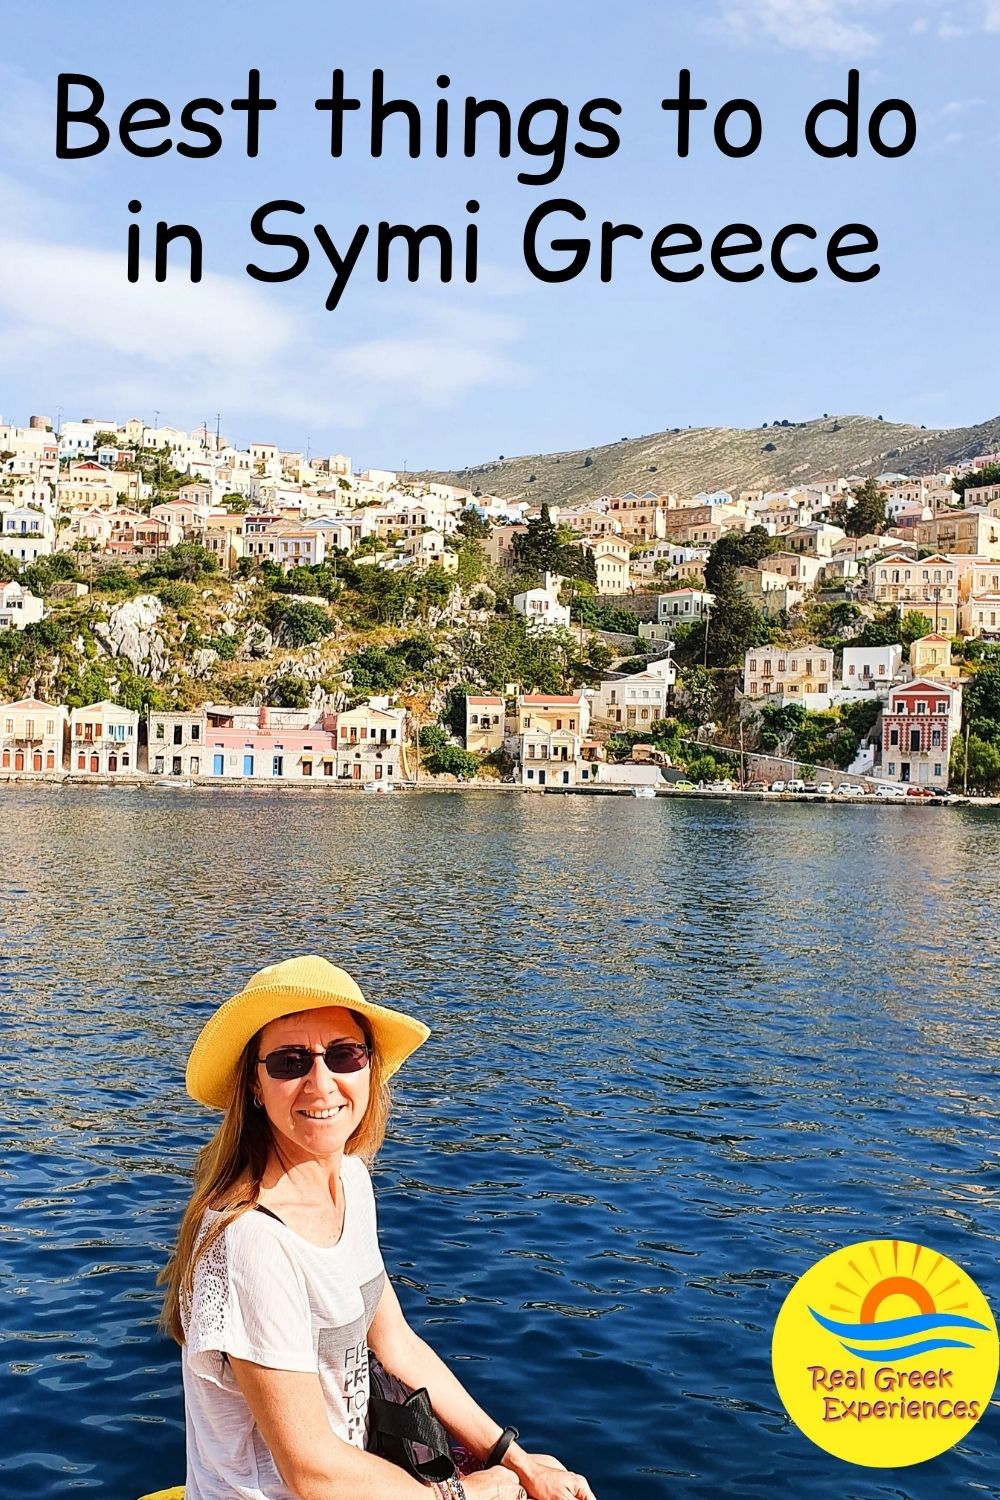 Ten best things to do in Symi Greece